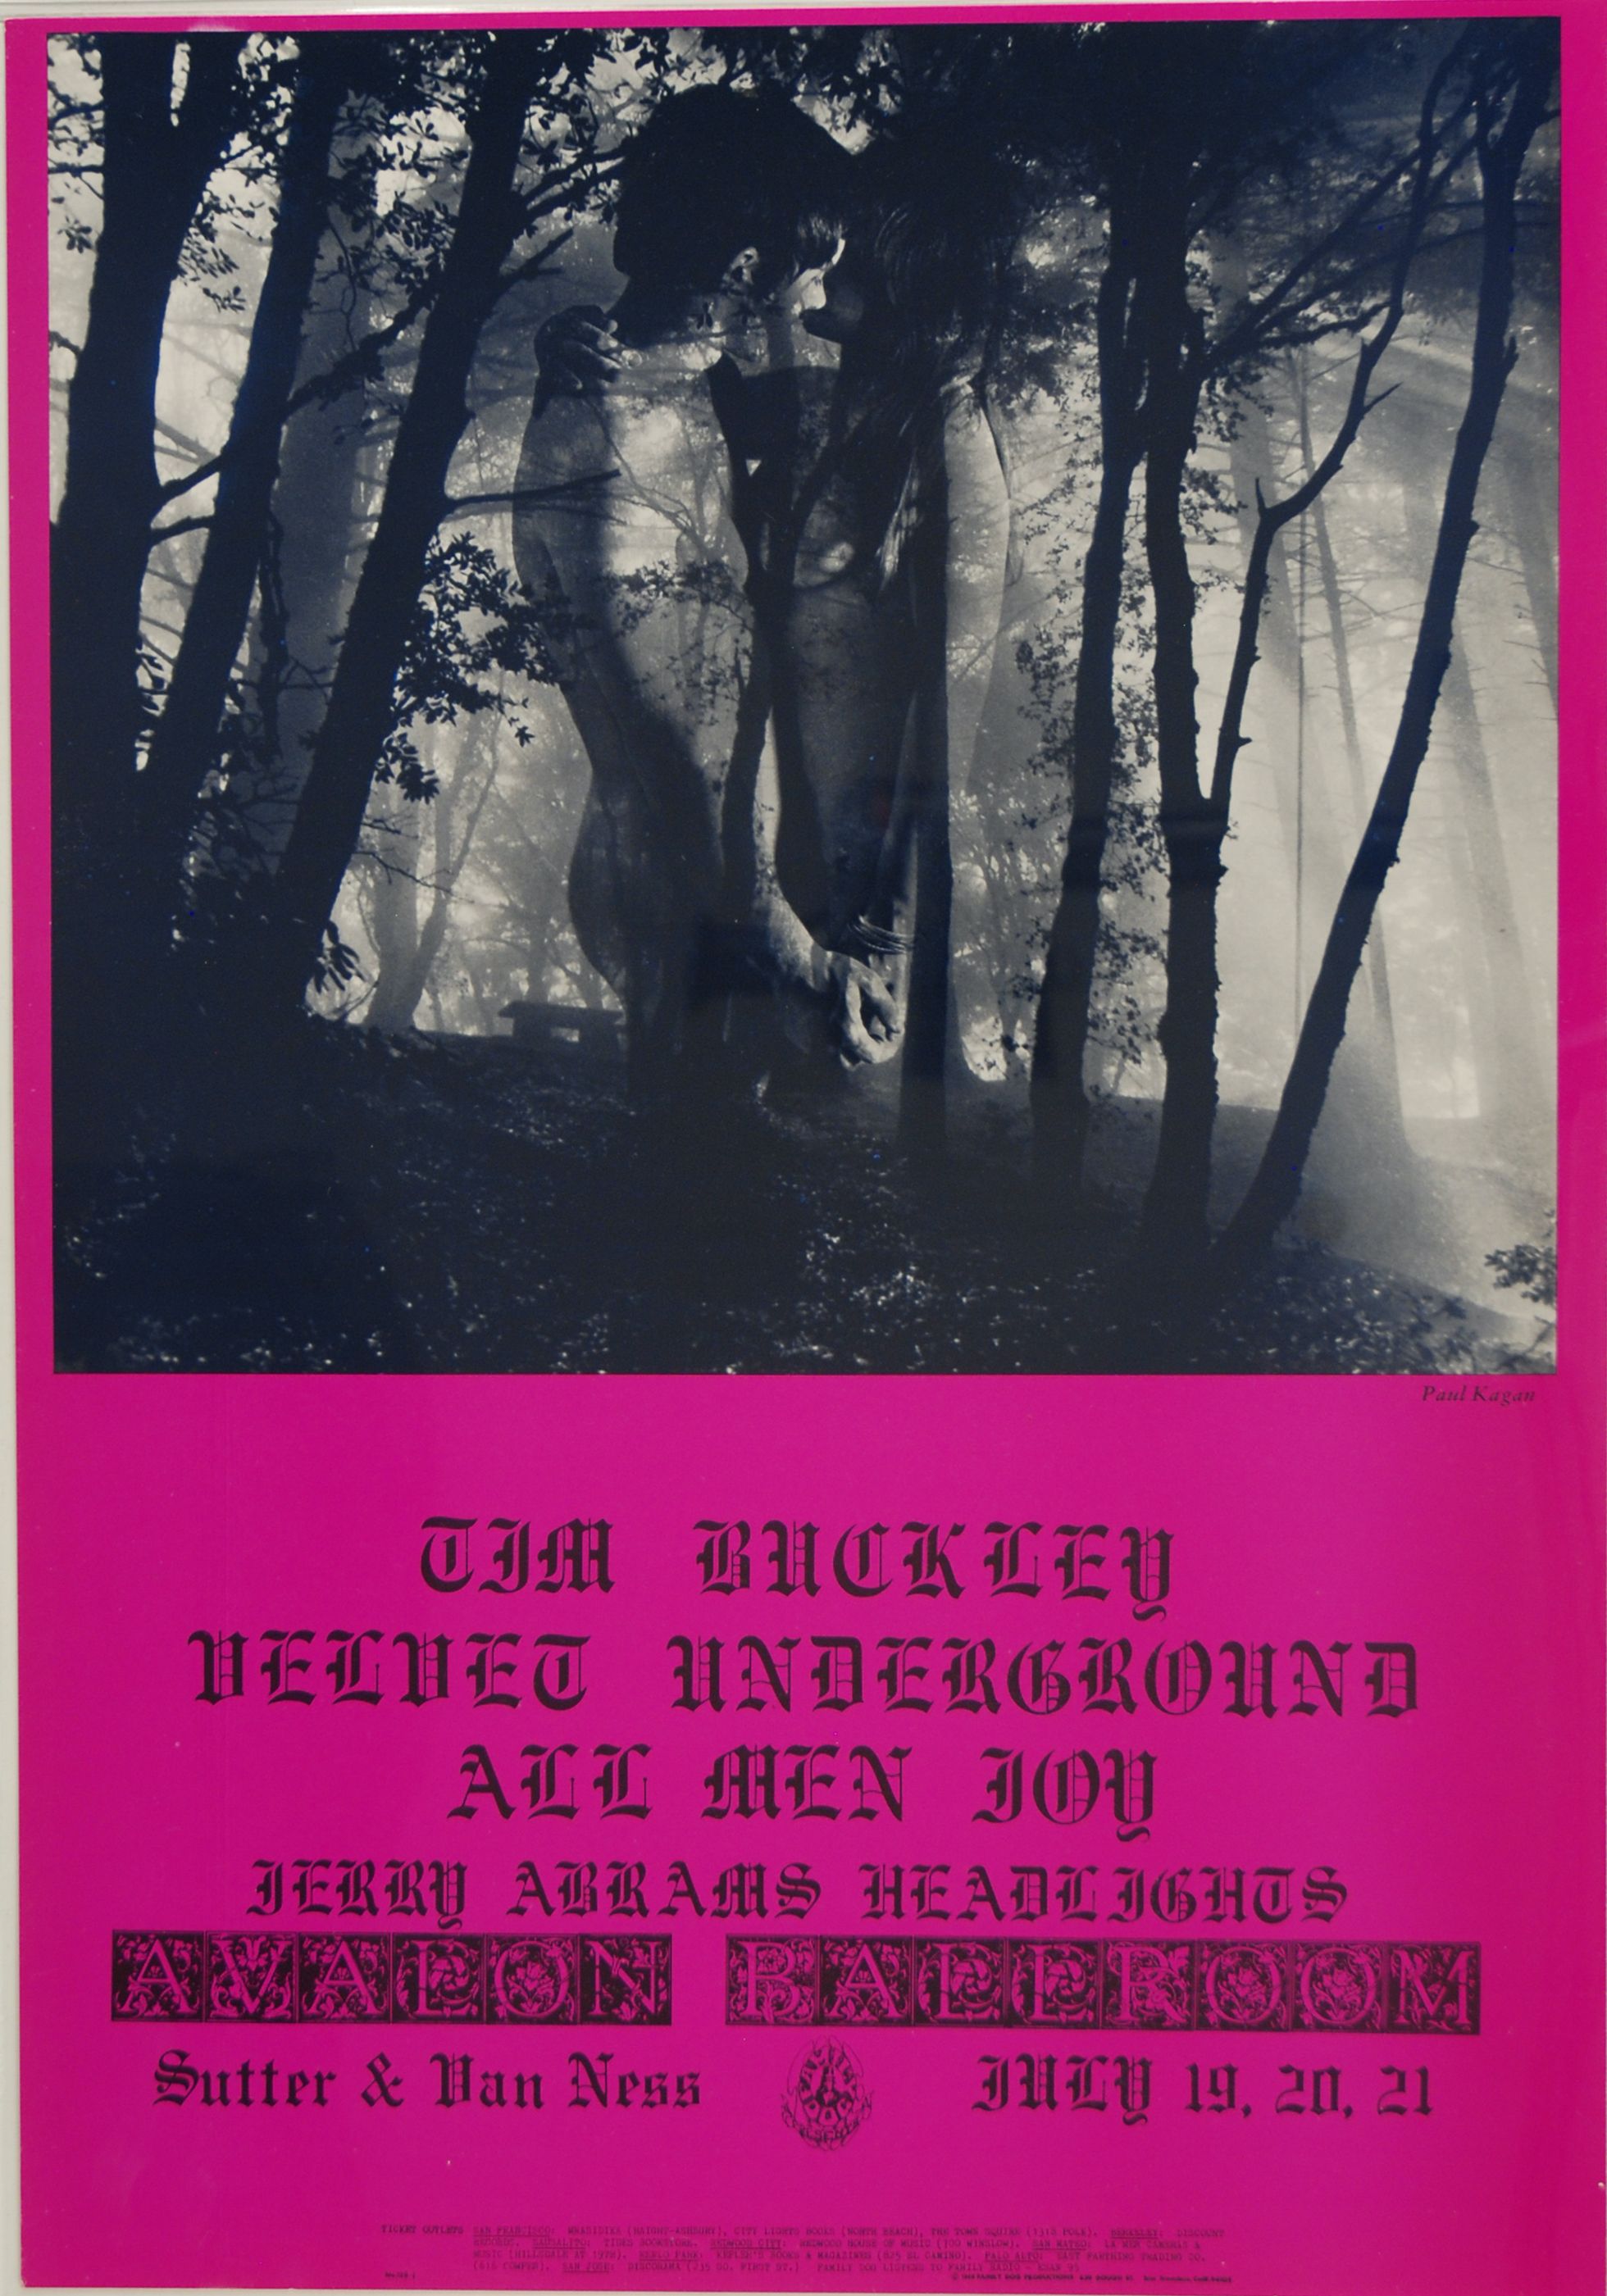 FD-128-OP-1 Concert Poster